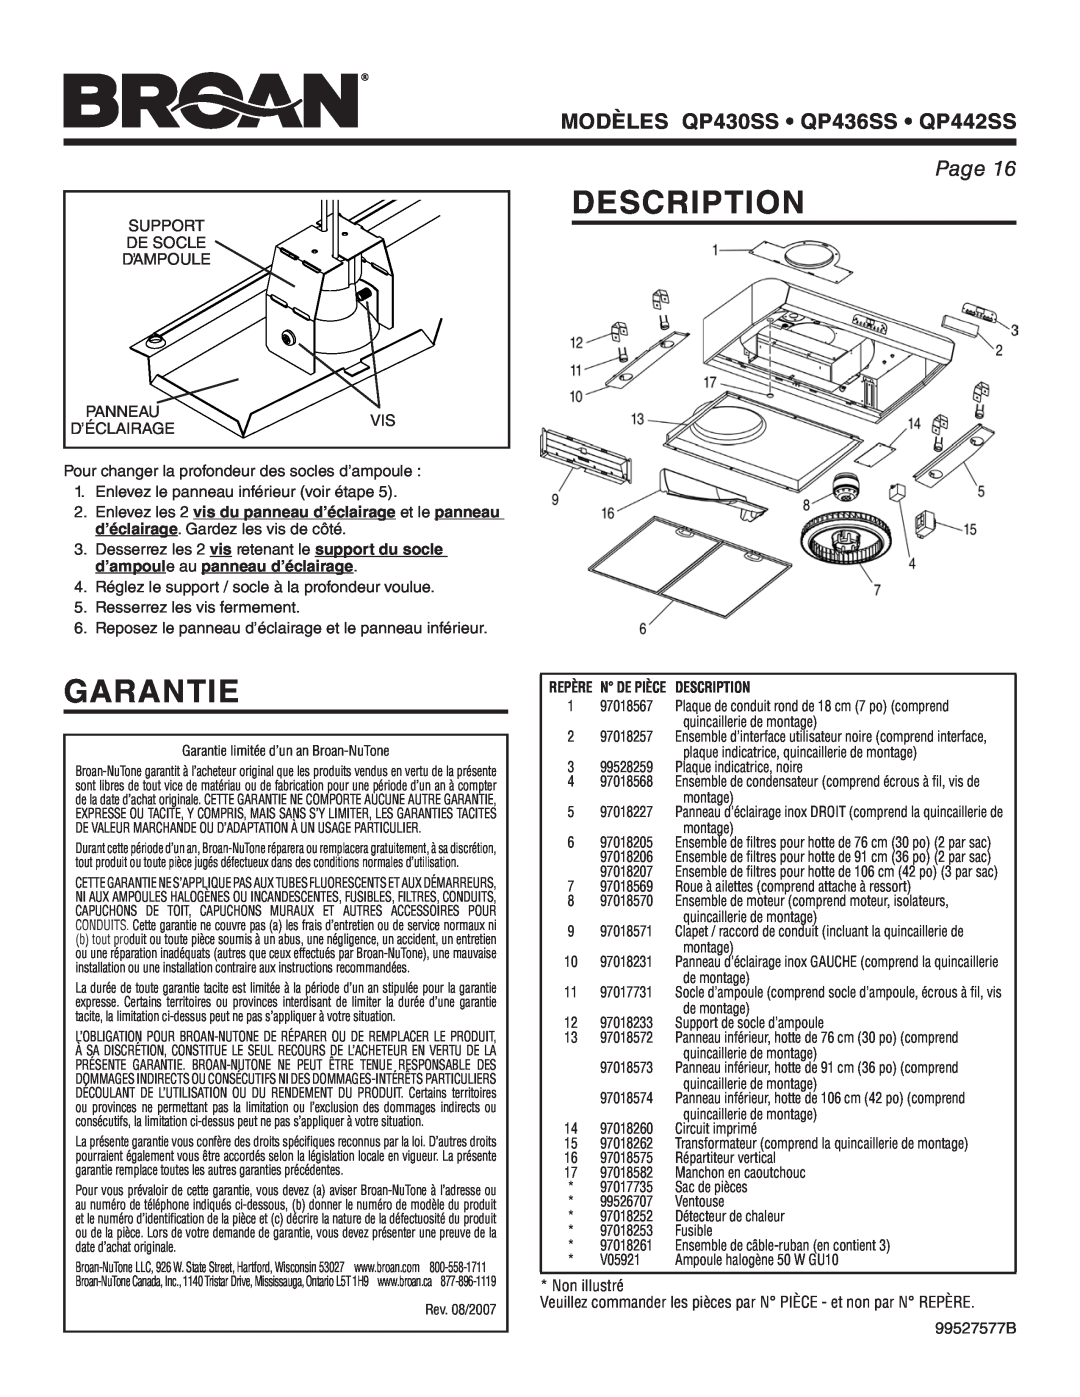 Broan warranty Garantie, Description, MODÈLES QP430SS • QP436SS • QP442SS, Page 